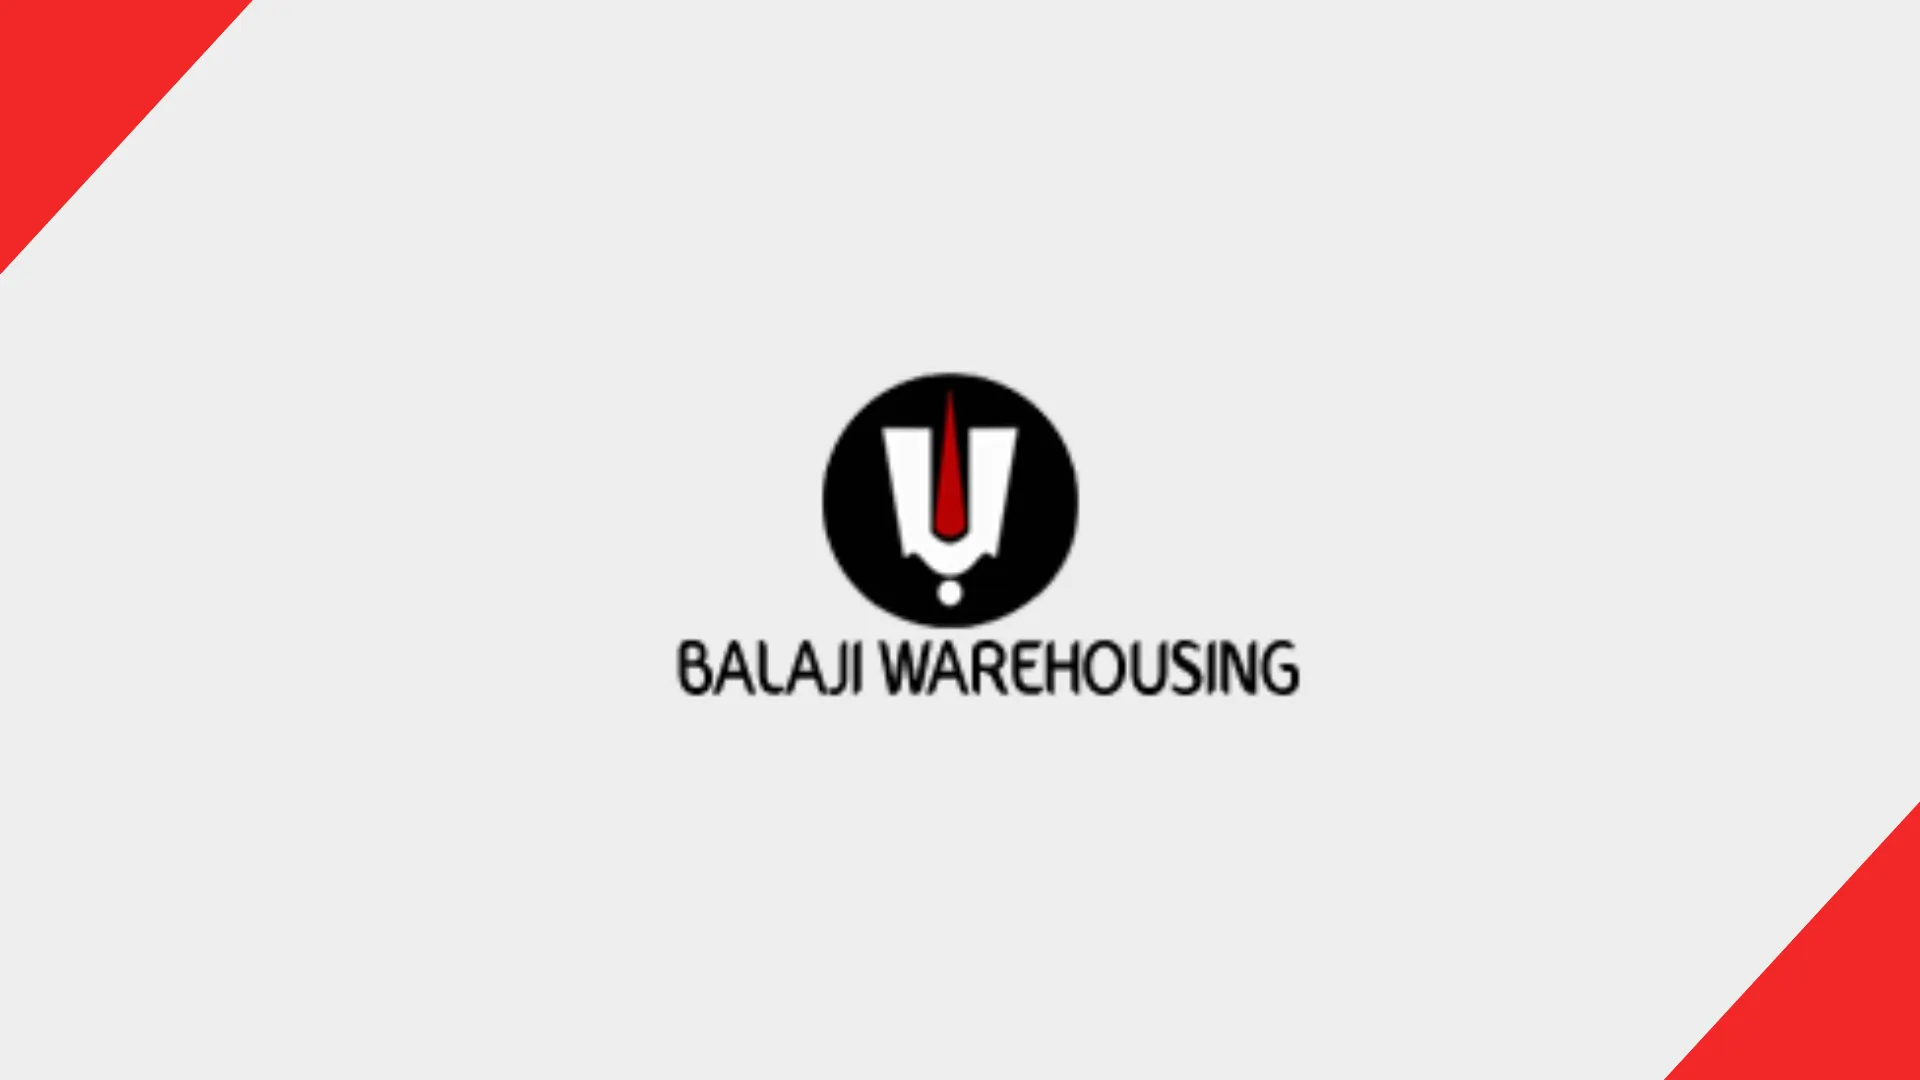 Warehousing Companies in Bangalore Balaji Warehousing